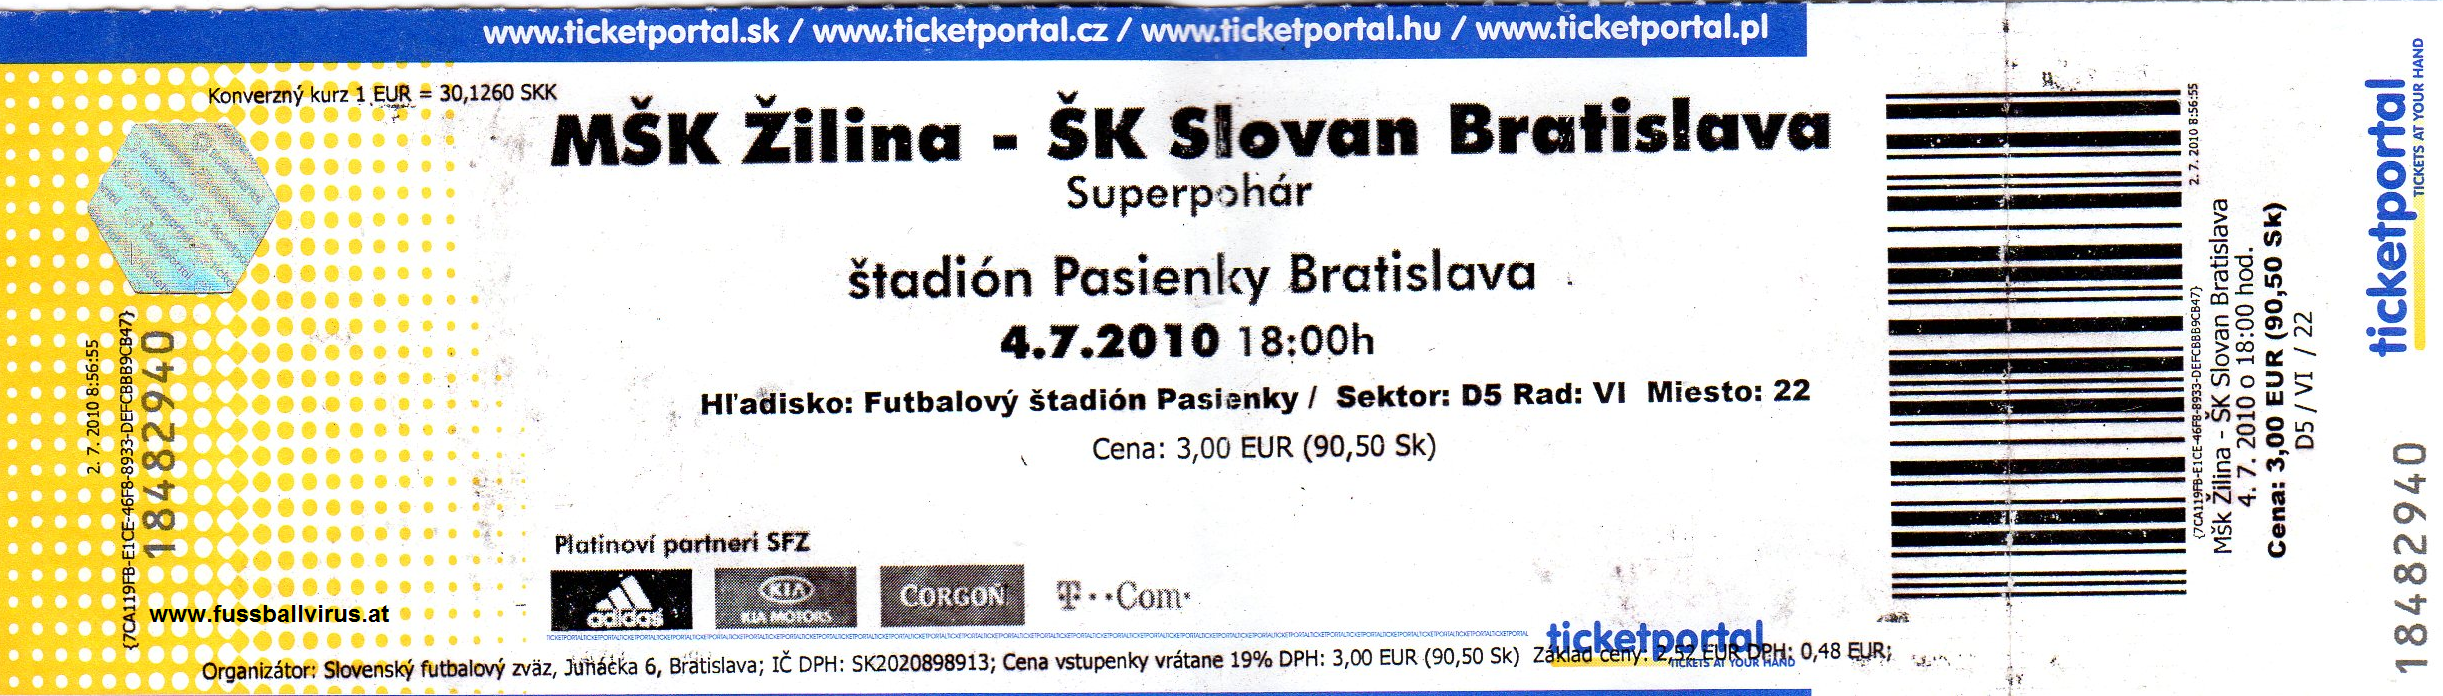 MSK Zilina - SK Slovan Bratislava 4.7.